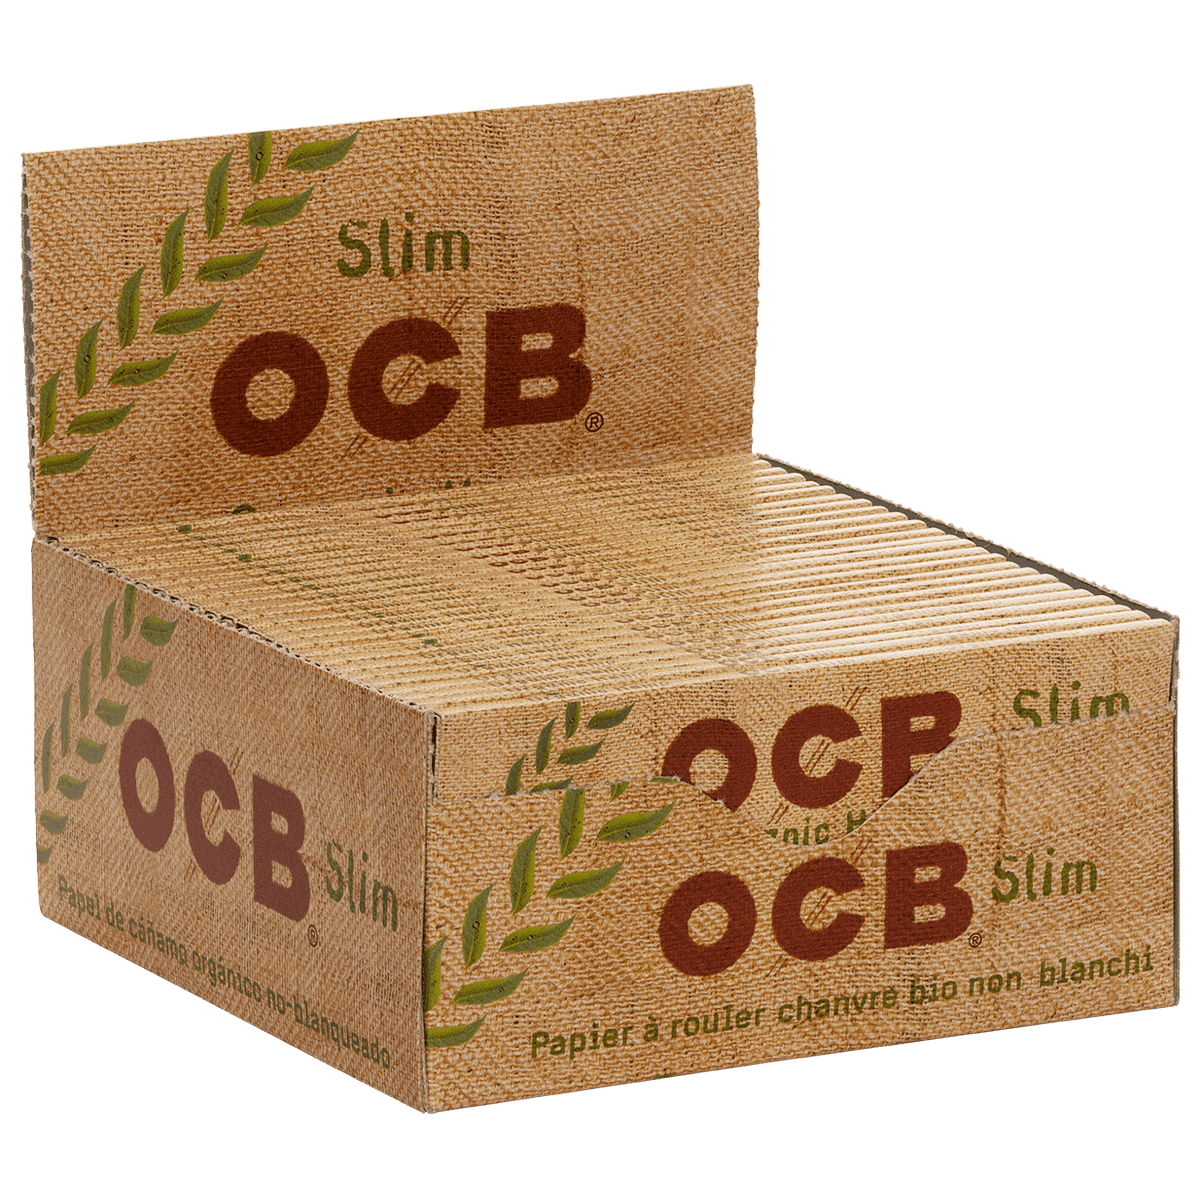 OCB Organic Hemp King Size Slim Blättchen 100% Biologisch 500x32 10 Boxen 